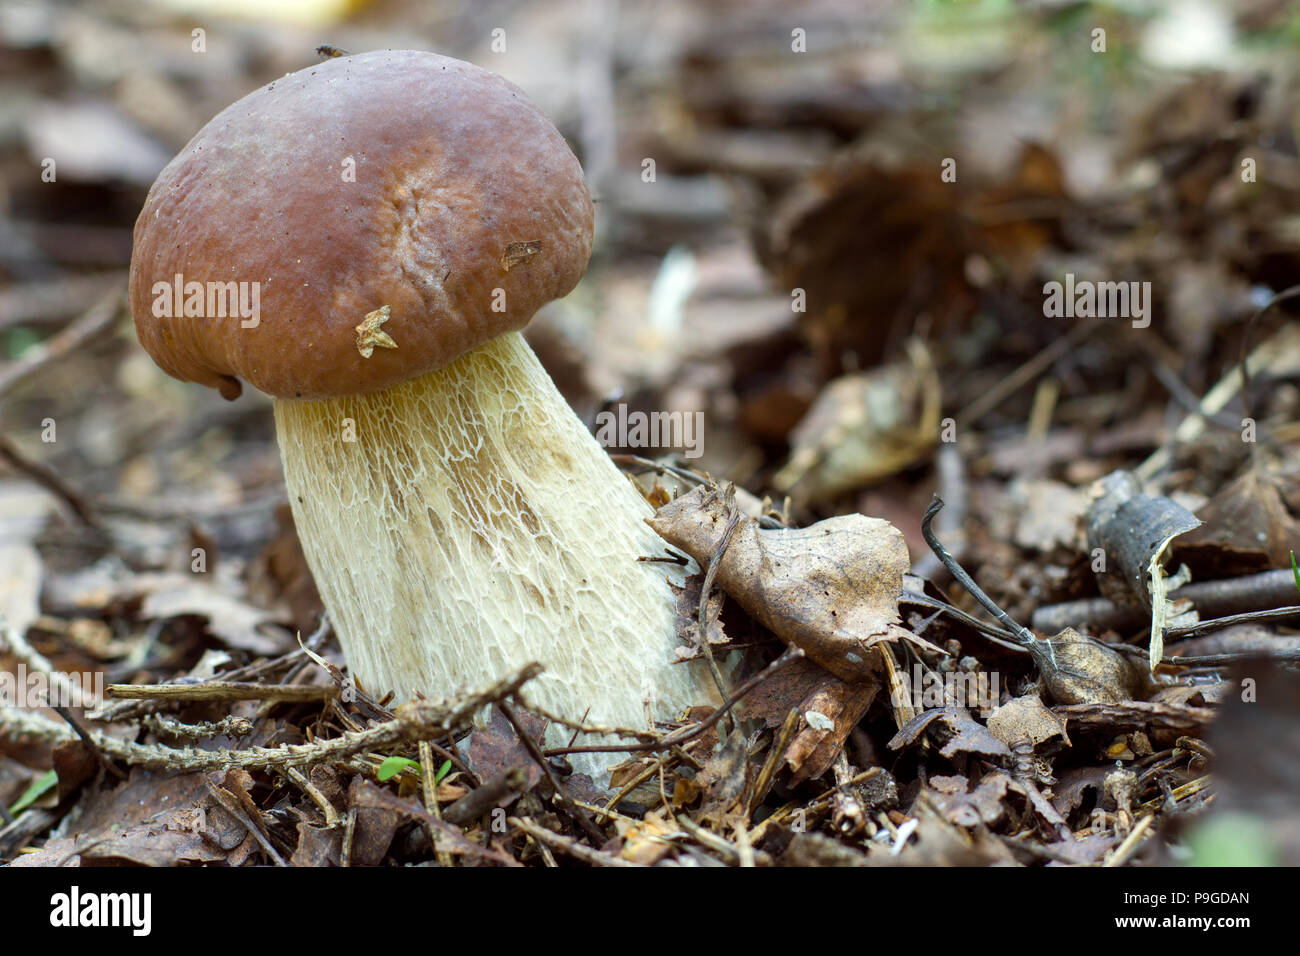 white mushroom on the forest floor Stock Photo